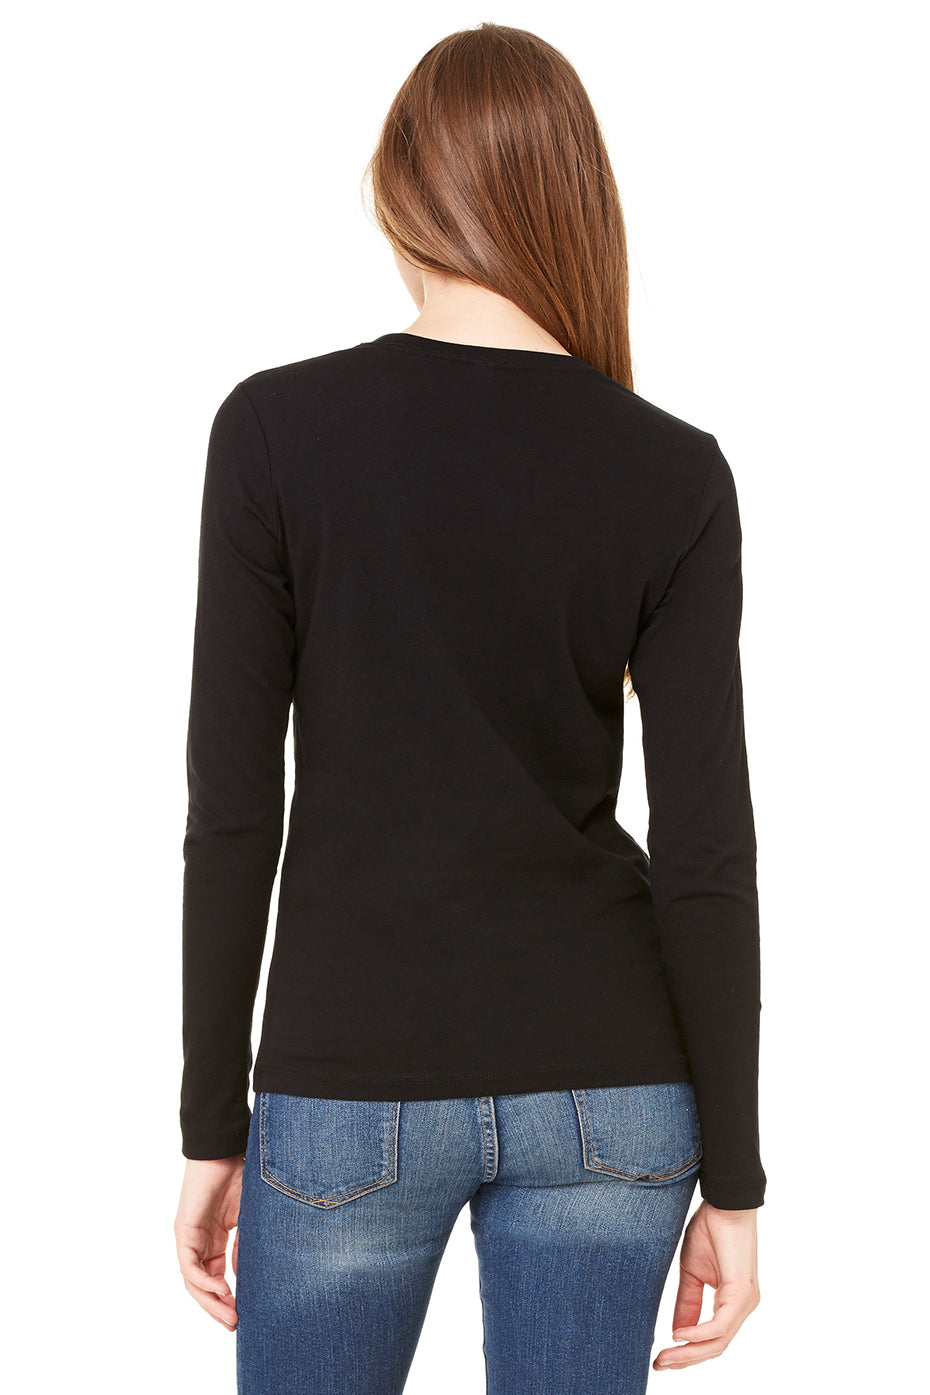 Women's Jersey Long Sleeve Tee - Be Stronger - FAFO Sportswear